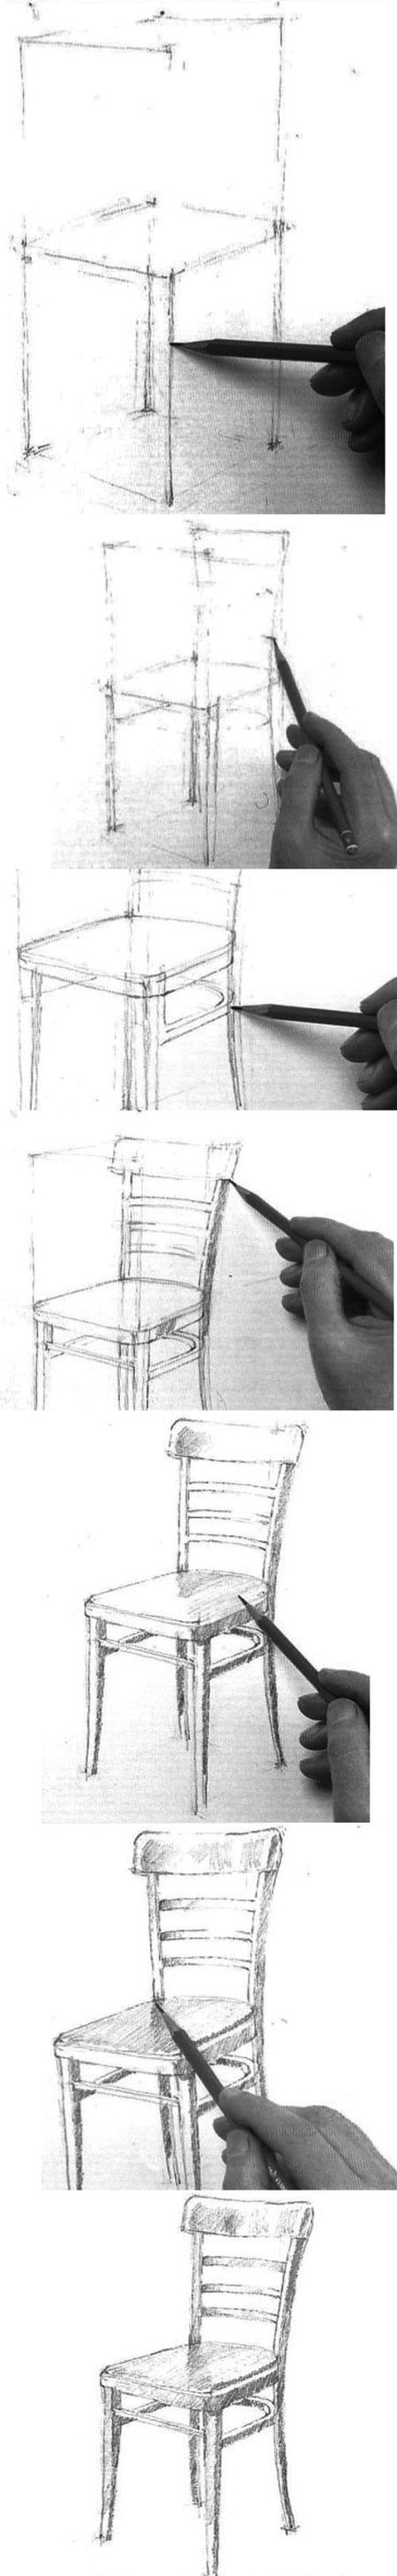 의자를 그리는 방법?